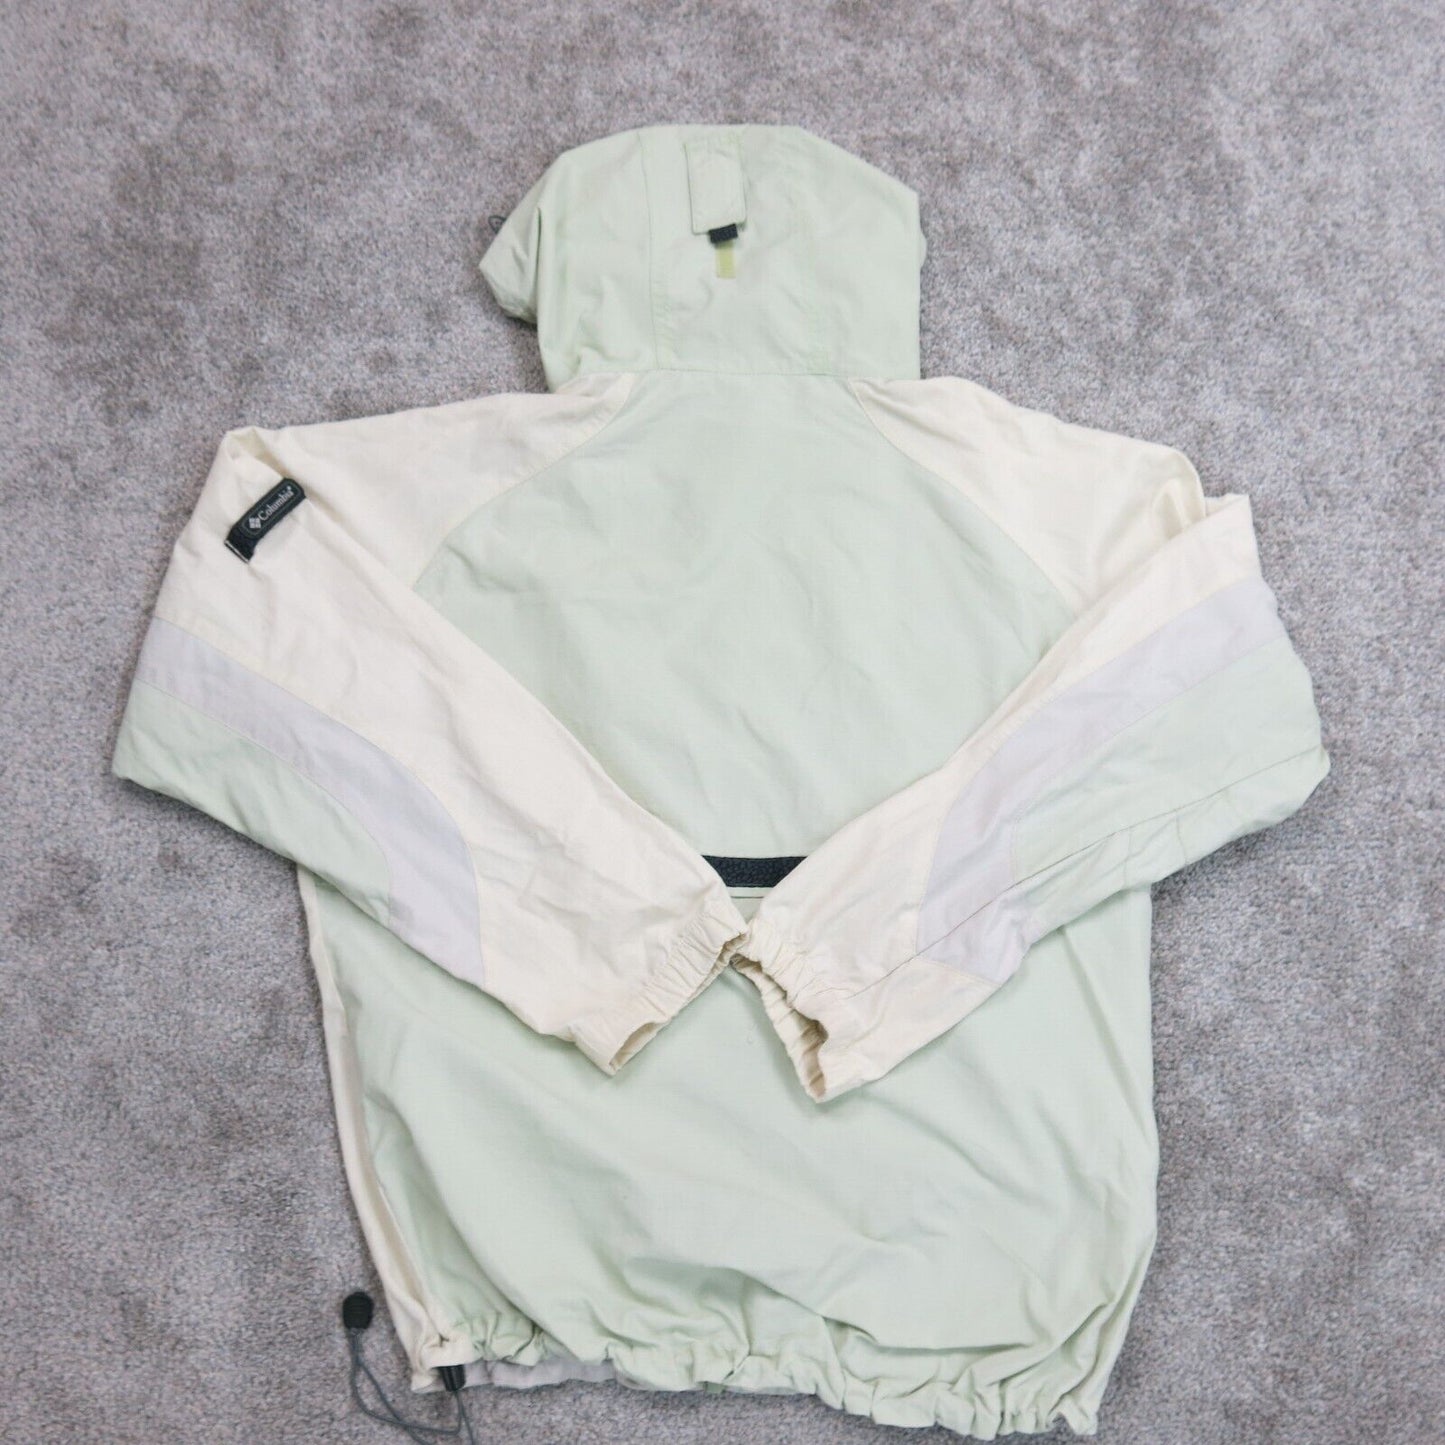 Columbia Sportswear Womens Full Zip Hooded Jacket Long Sleeve Beige/Green Size L